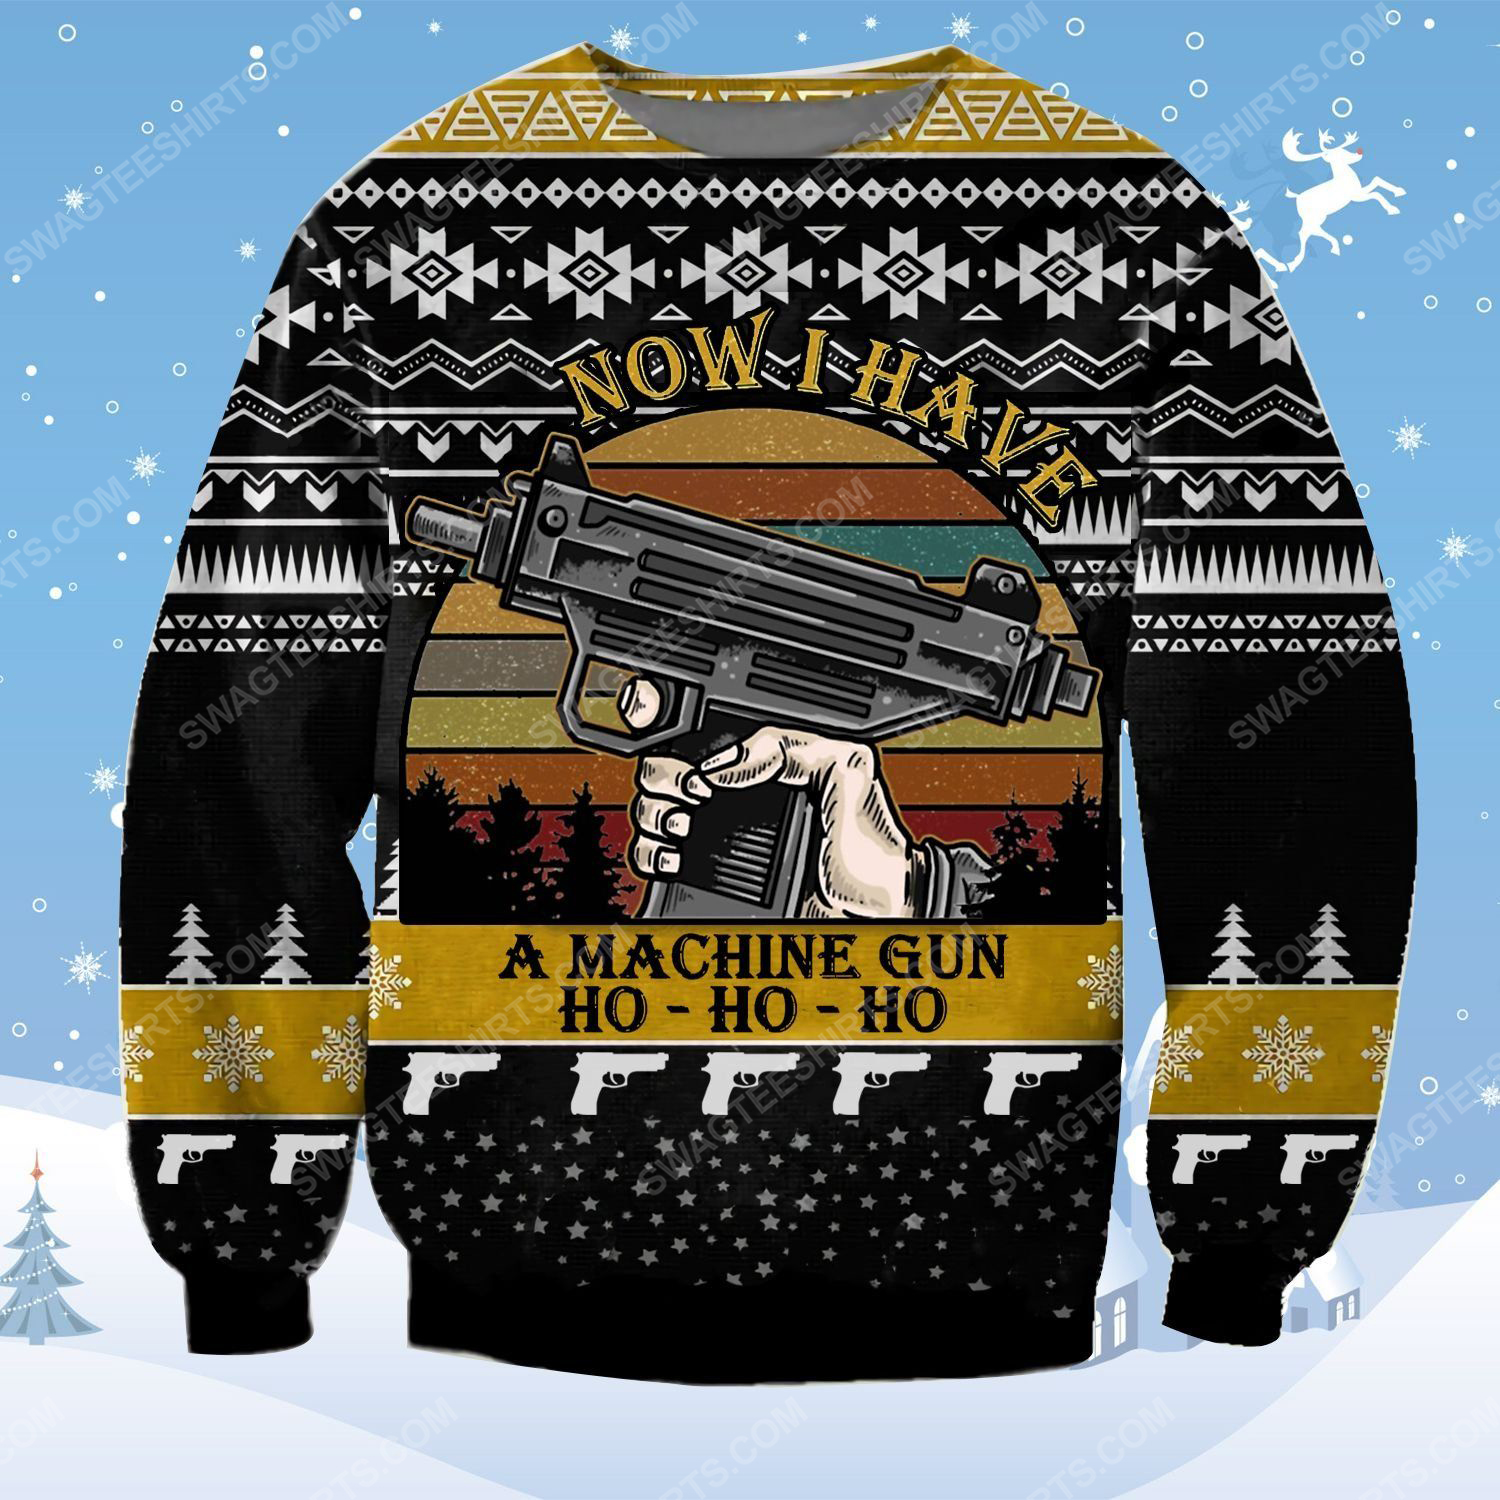 Die hard now i have a machine gun ho ho ho ugly christmas sweater - Copy (3)